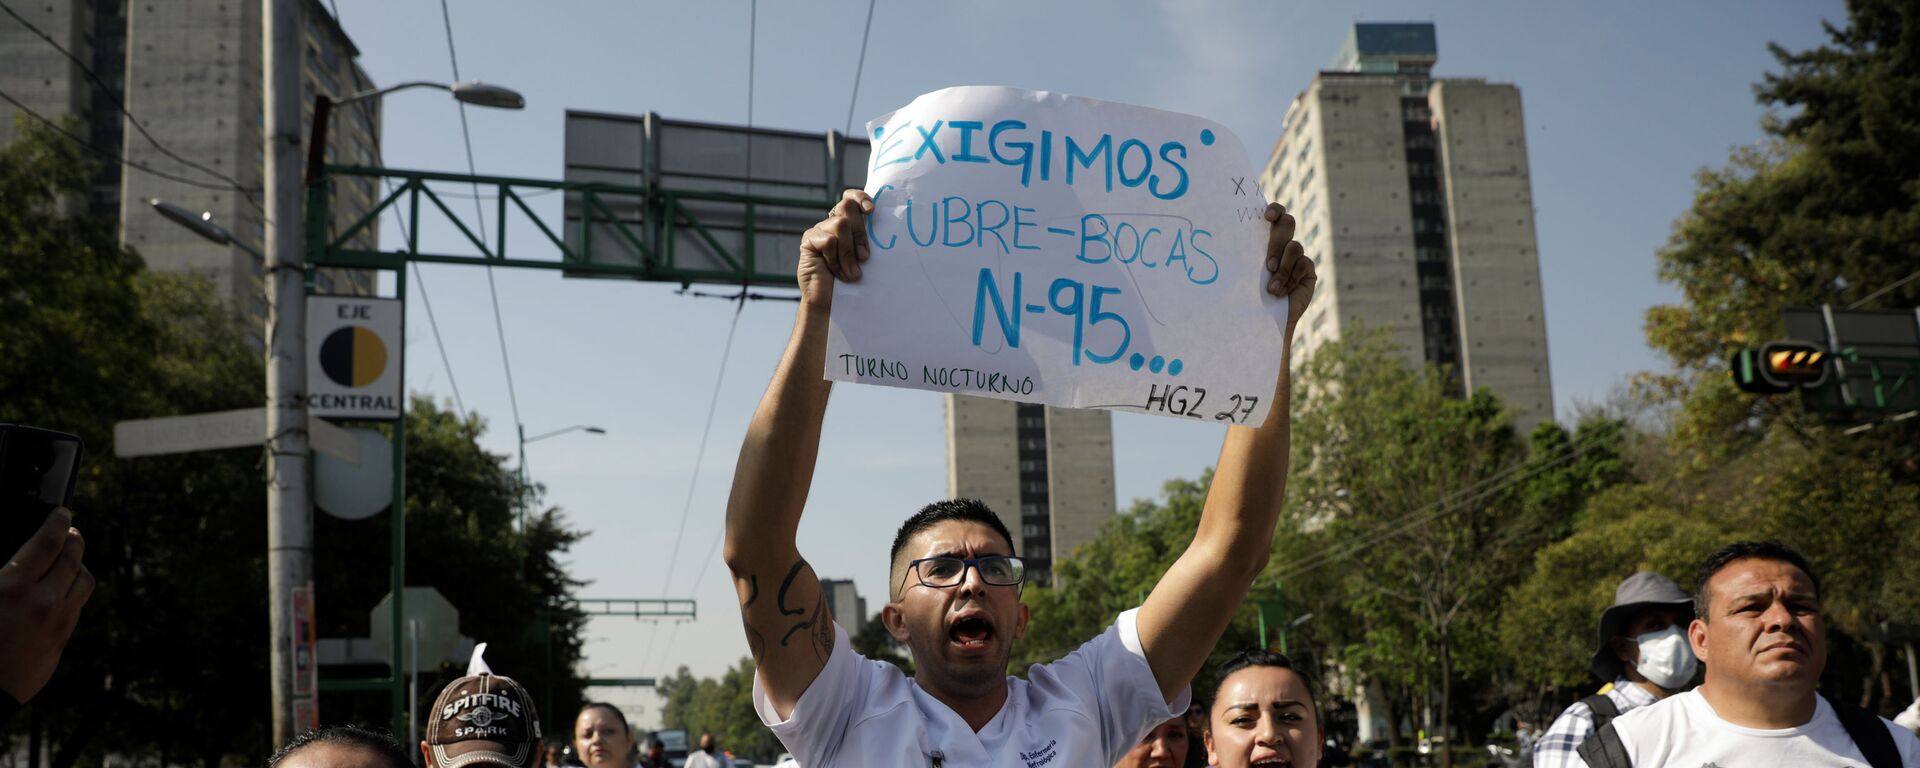 Trabajadores médicos del Instituto Mexicano del Seguro Social (IMSS) protestan para exigir un mejor equipo de protección para tratar a los pacientes con COVID-19, Ciudad de México - Sputnik Mundo, 1920, 21.04.2020